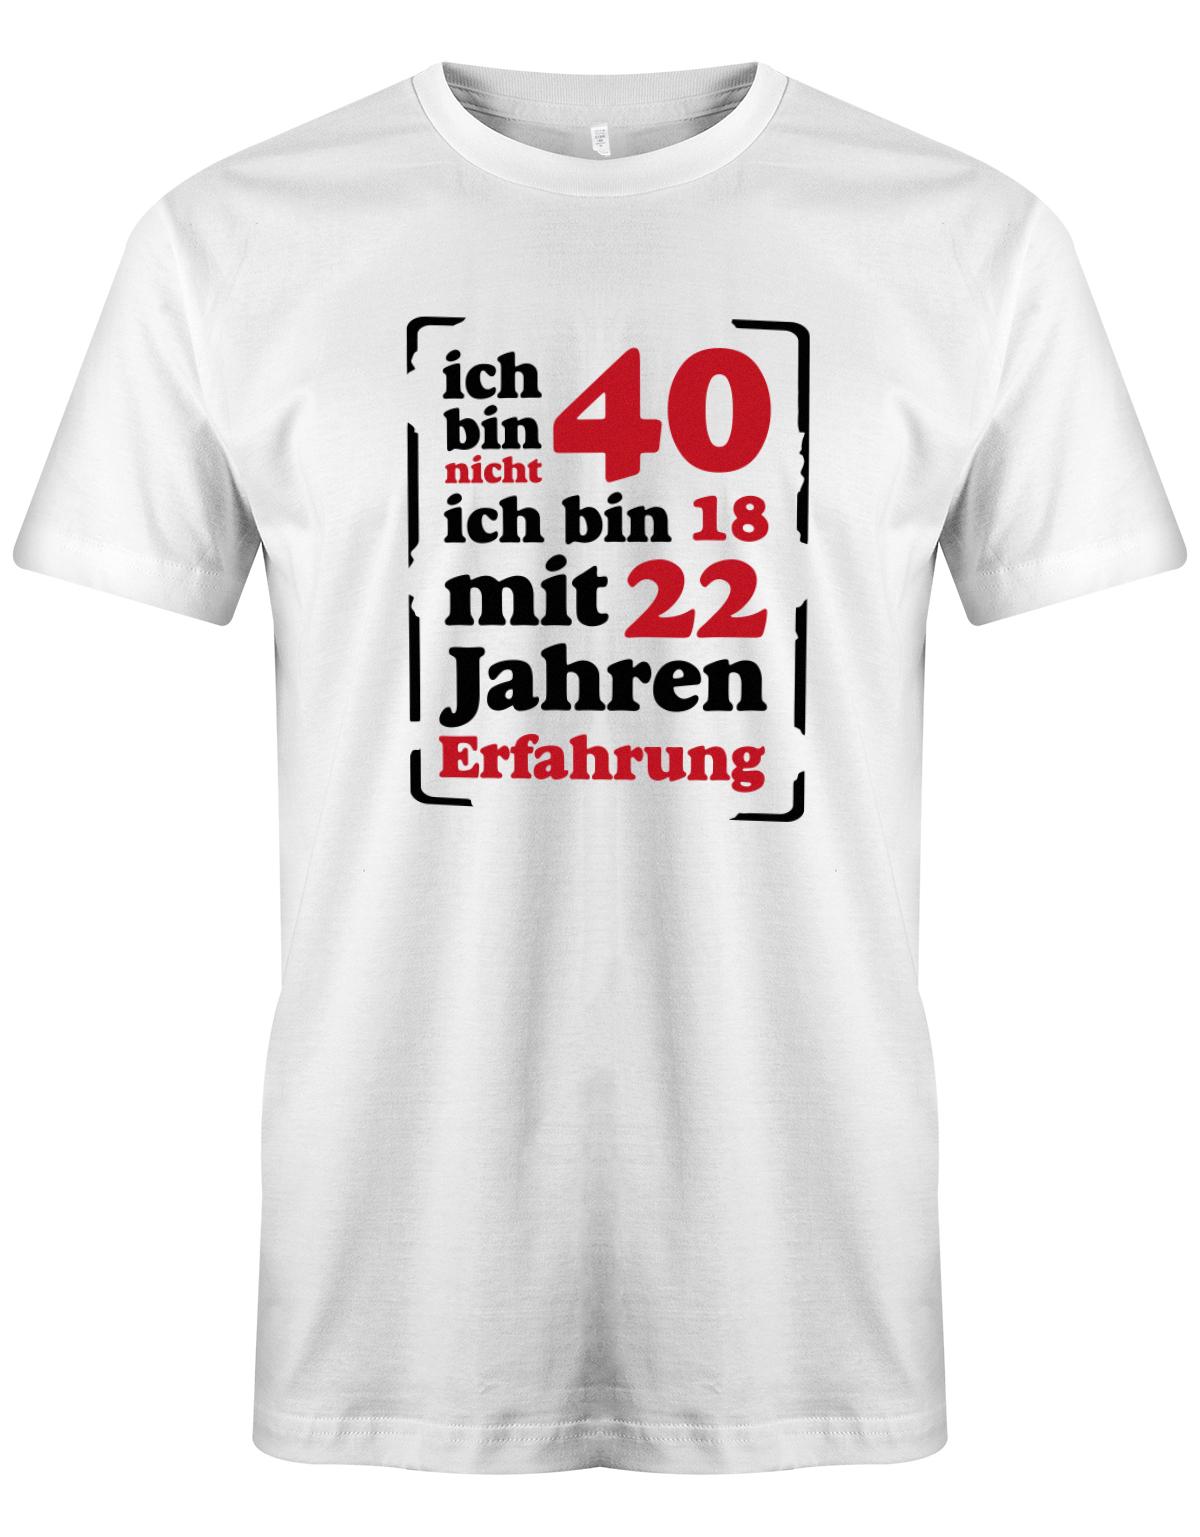 Ich bin nicht 40 ich bin 18 mit 22 Jahren Erfahrung - T-Shirt 40 Geburtstag Männer myShirtStore Weiss